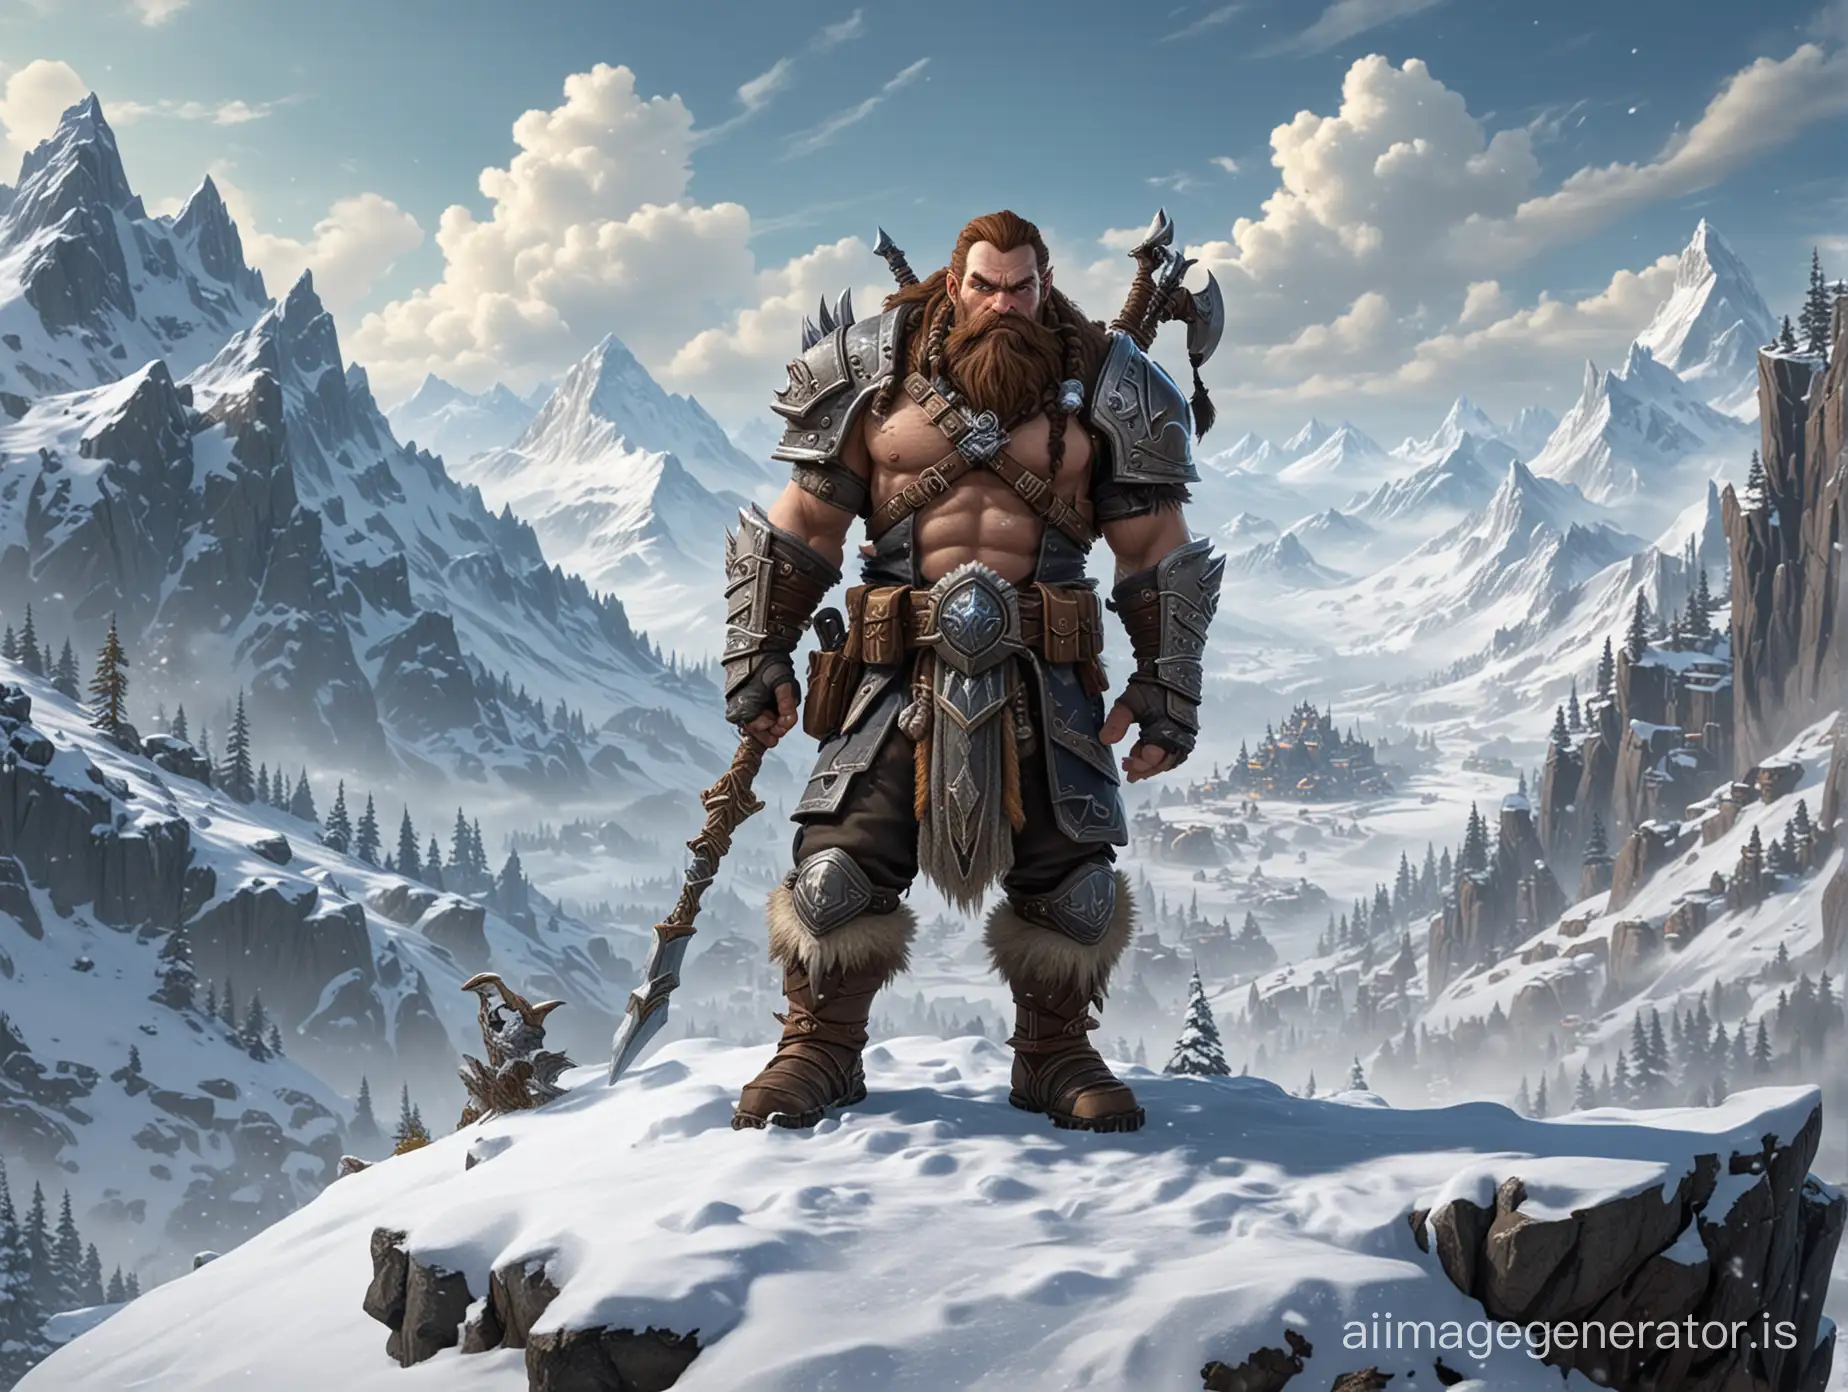 Dwarf-Hunter-in-Snowy-Mountain-Landscape-World-of-Warcraft-Fan-Art